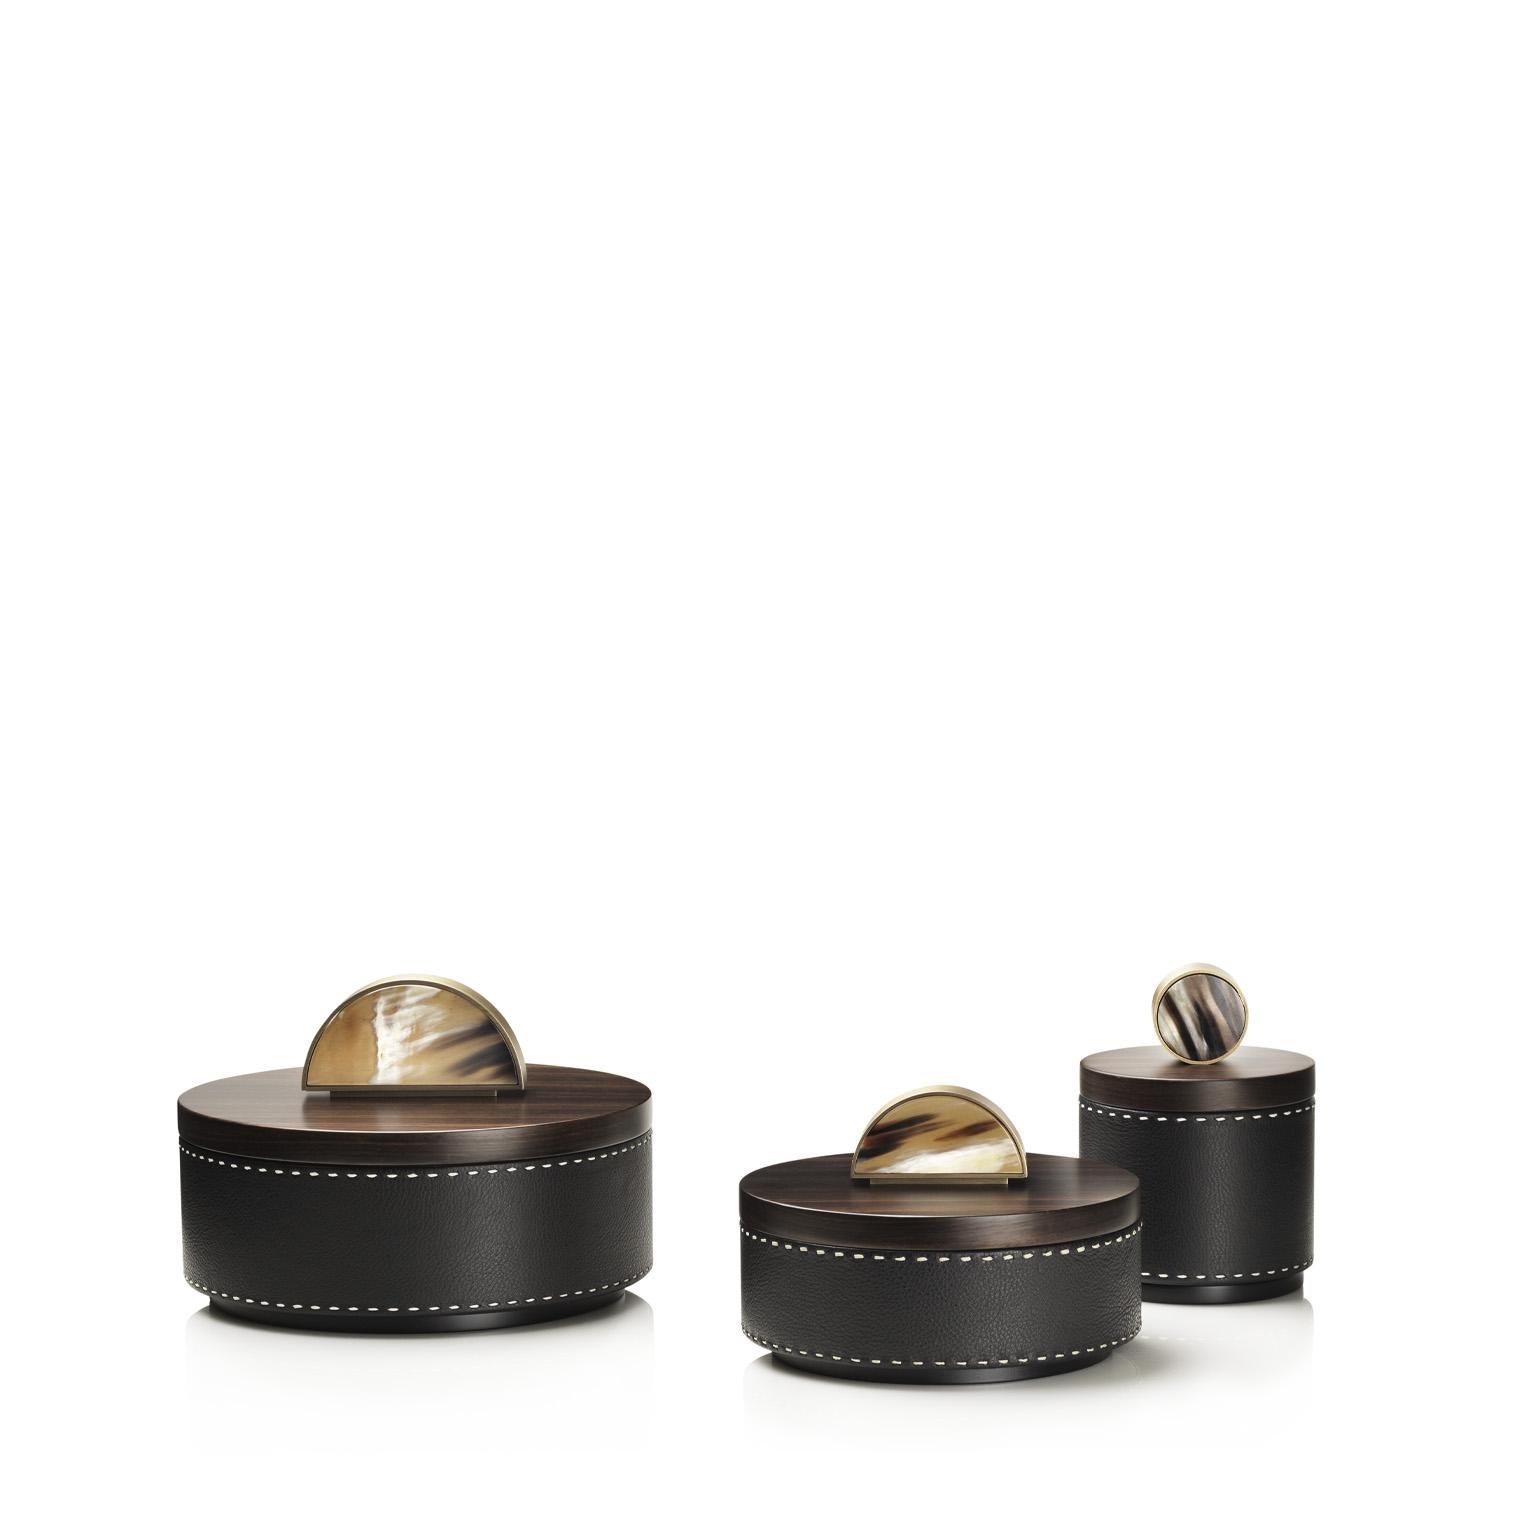 Agneta Round Box in Pebbled Leather with Handle in Corno Italiano, Mod. 4487 In New Condition For Sale In Recanati, Macerata